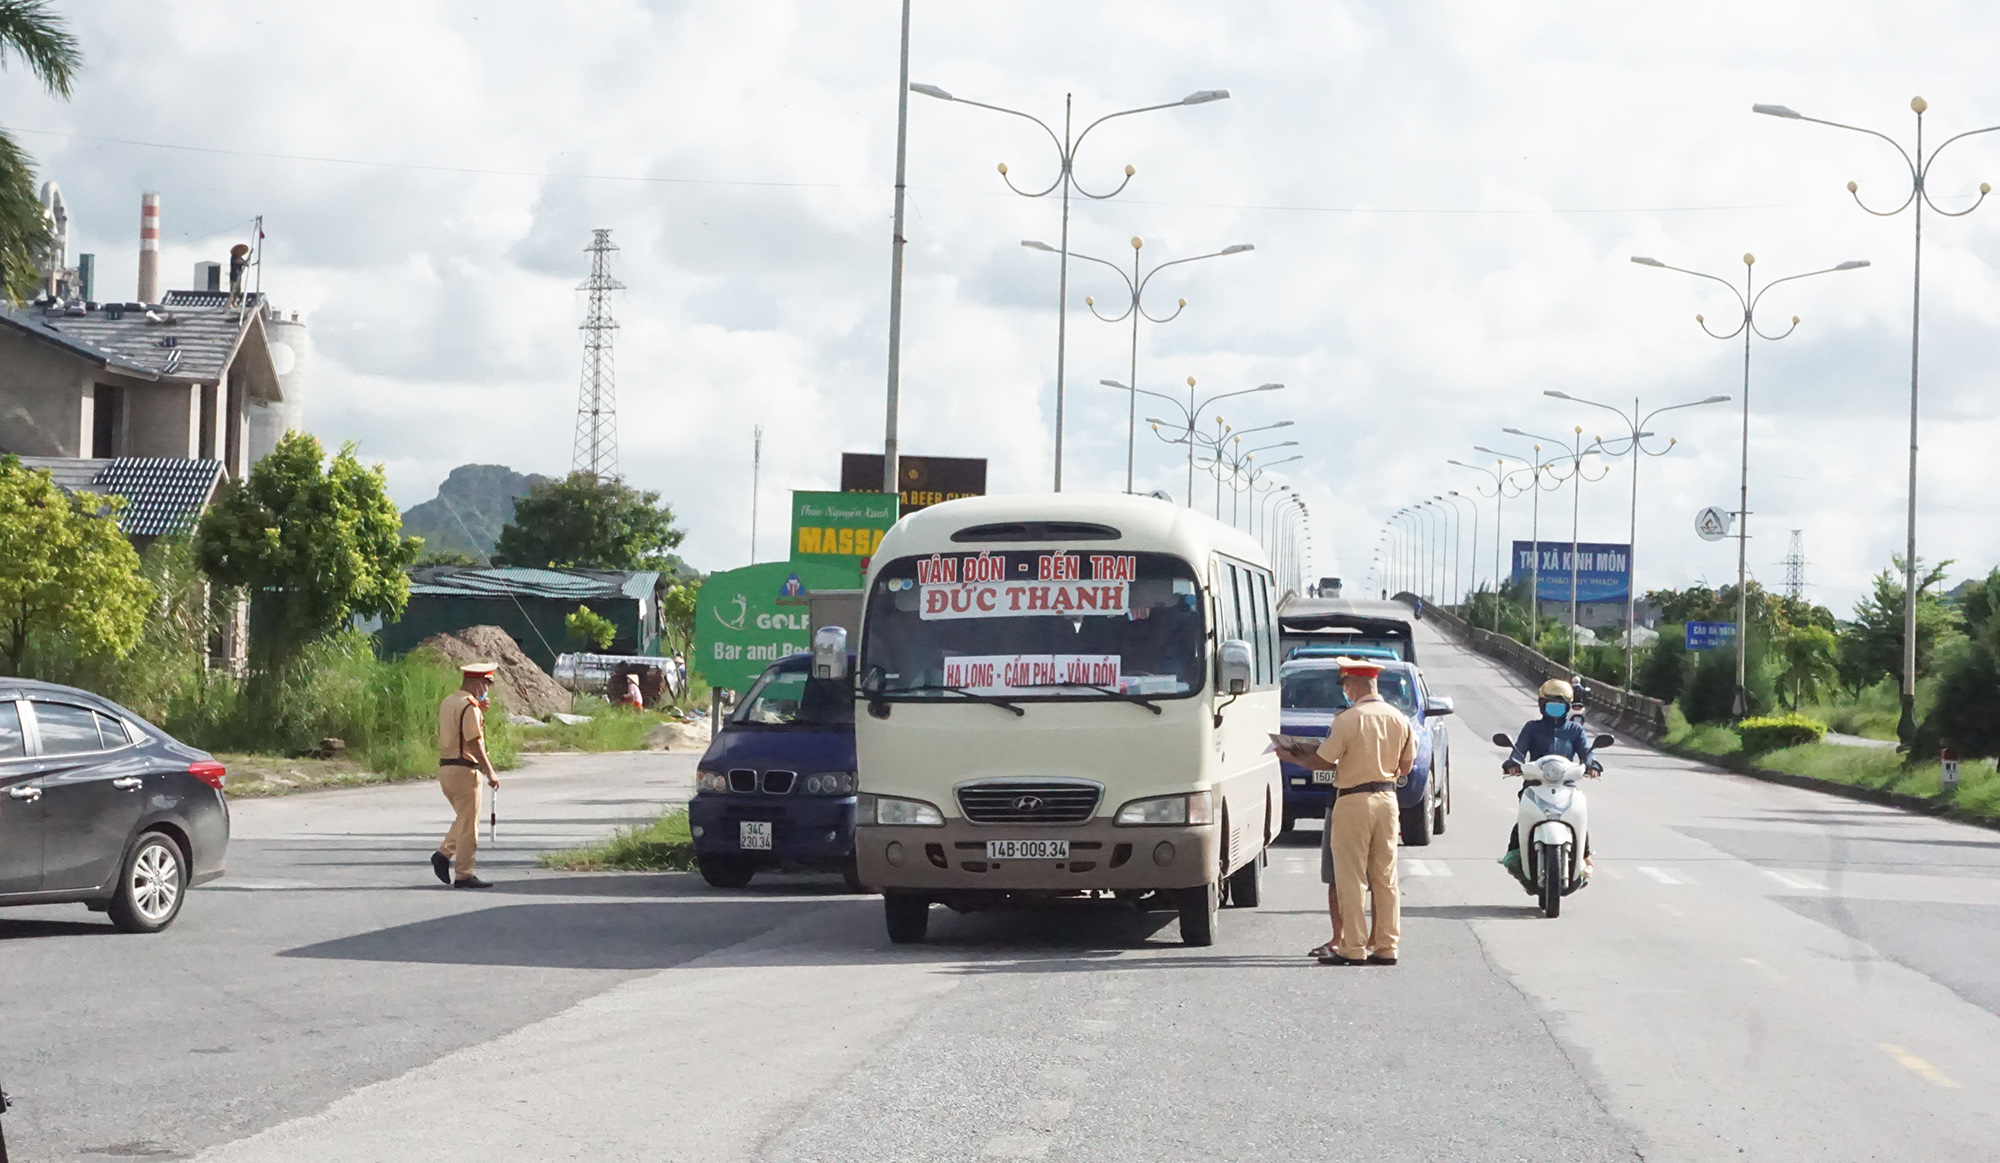 Các phương tiện đi từ tỉnh Hải Dương vào Quảng Ninh được kiểm soát chặt chẽ tại chốt kiểm soát cầu Đá Vách.